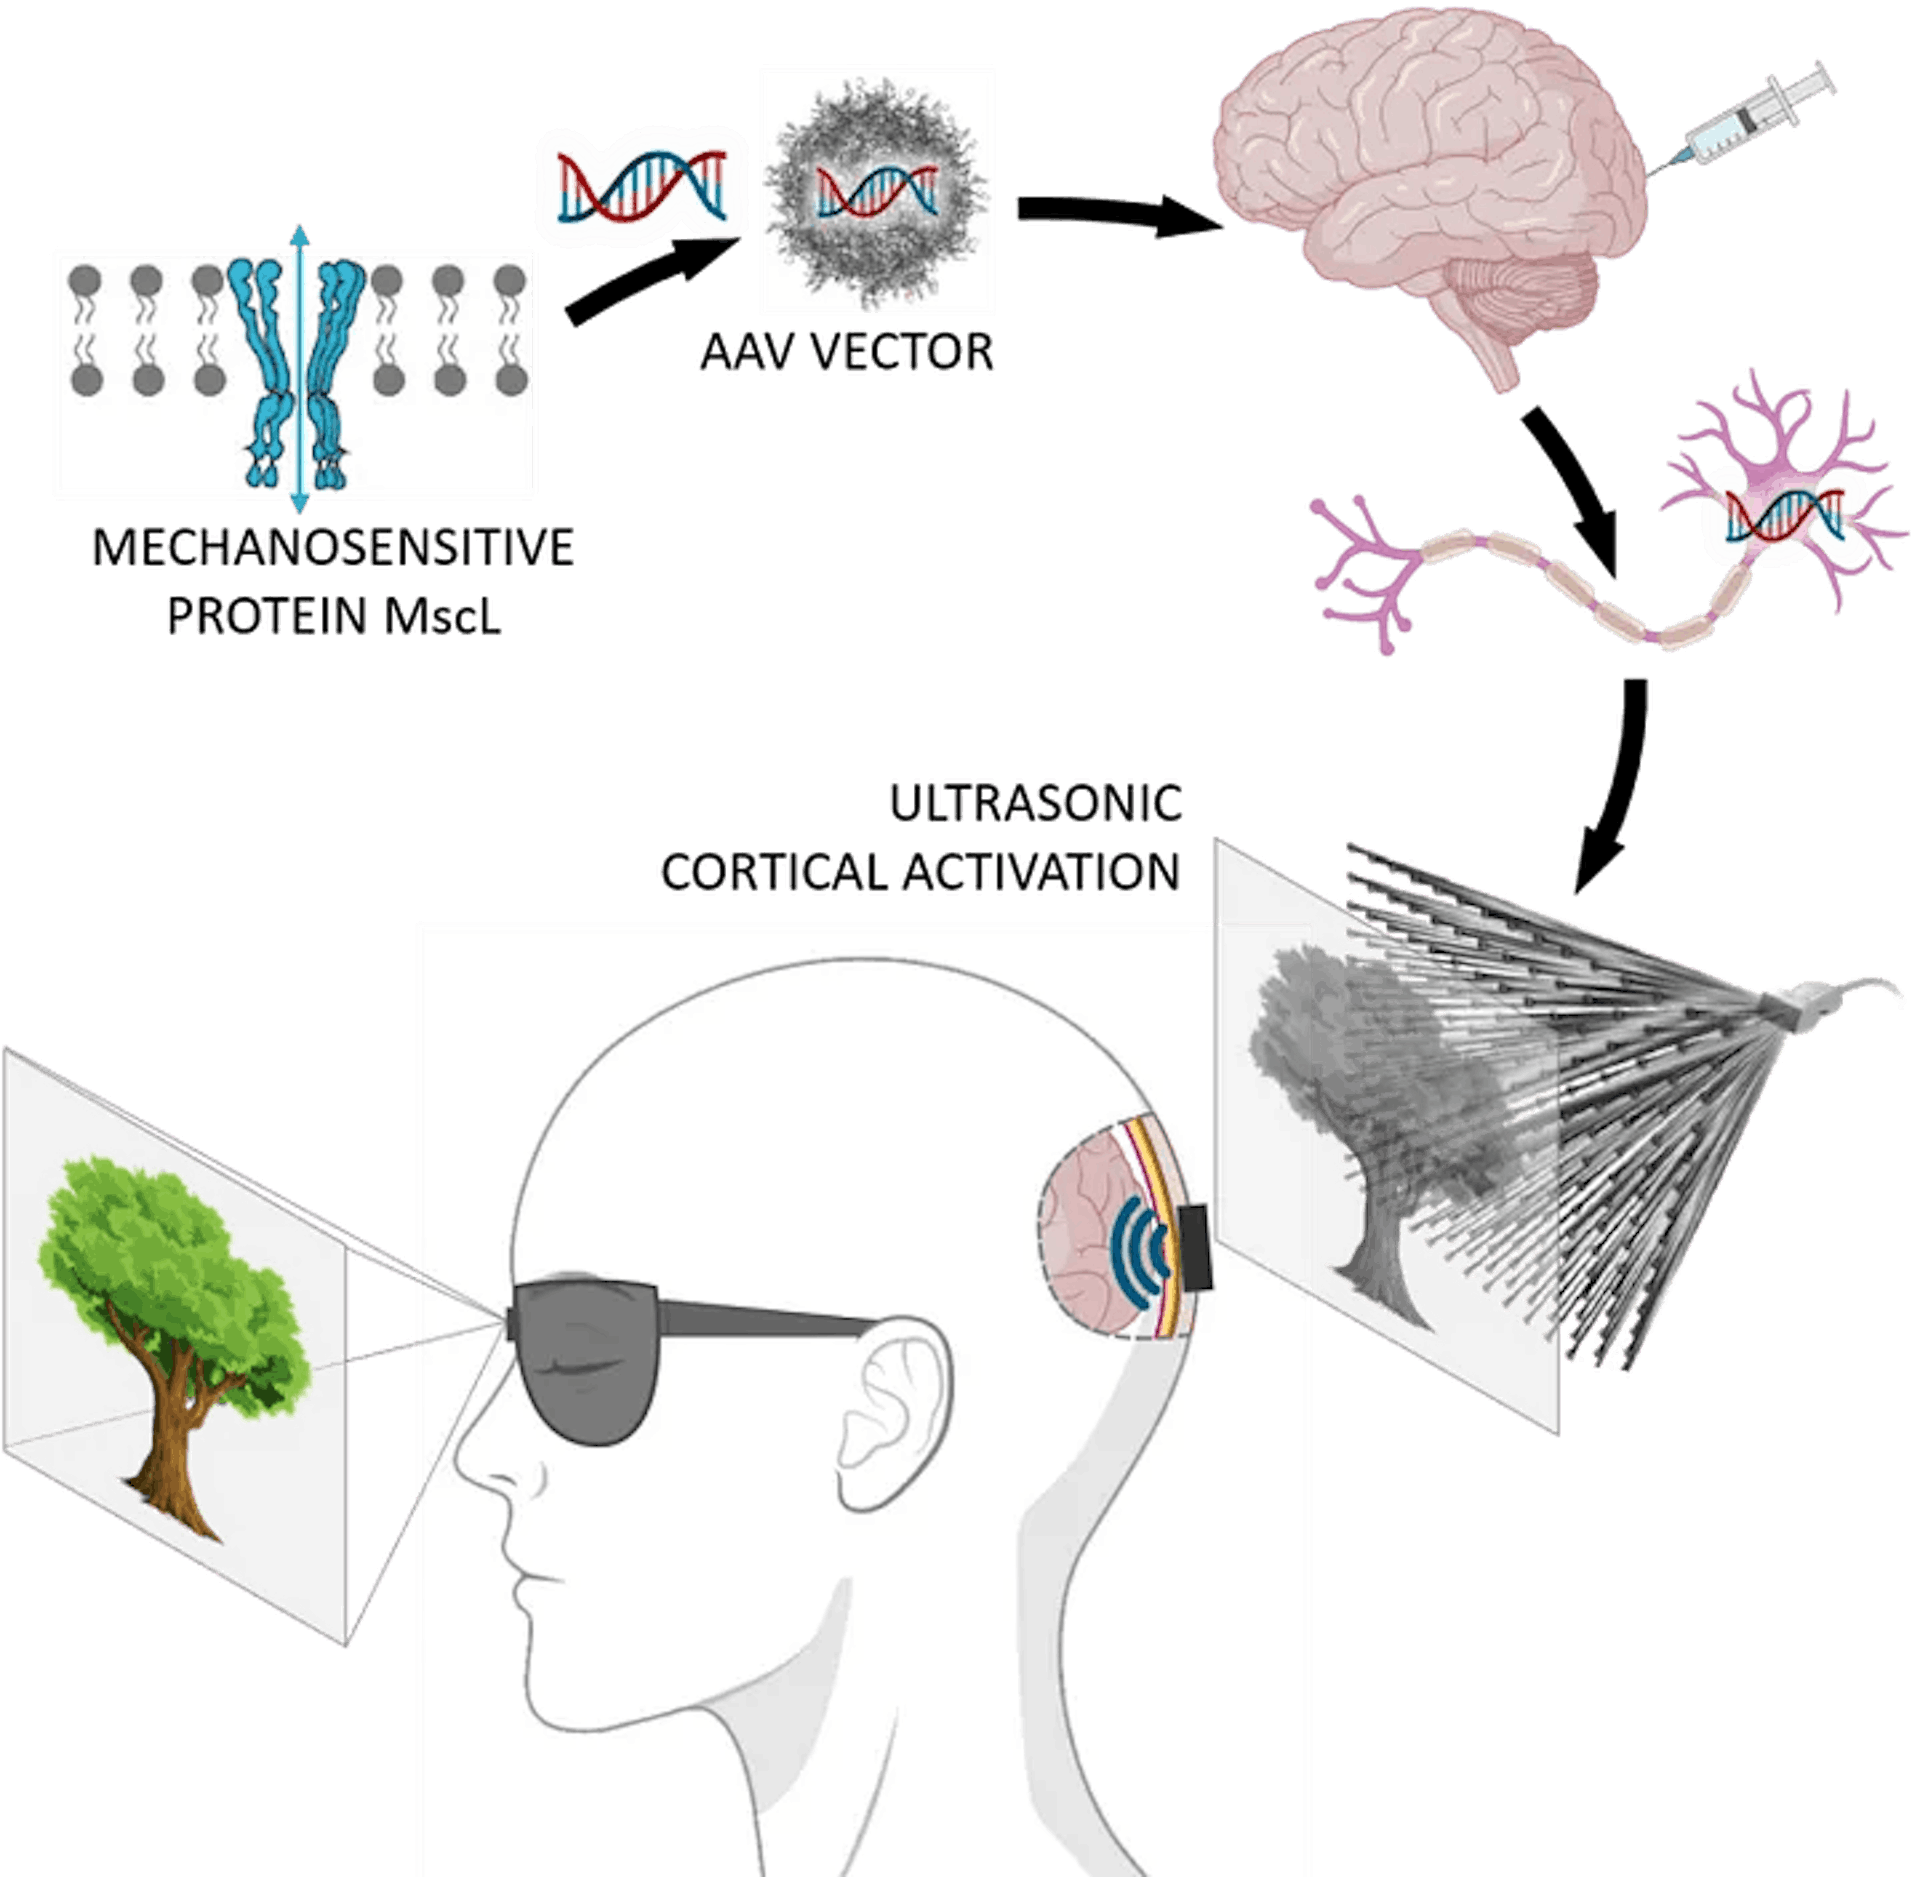 실명을 치료하기 위해 초음파를 통해 이미지를 뇌에 직접 투사할 수 있습니다. 출처: https://www.physicsformedicine.espci.fr/publication-in-nature-nanotechnology-towards-restoring-vision-using-ultrasound-sonogenetics